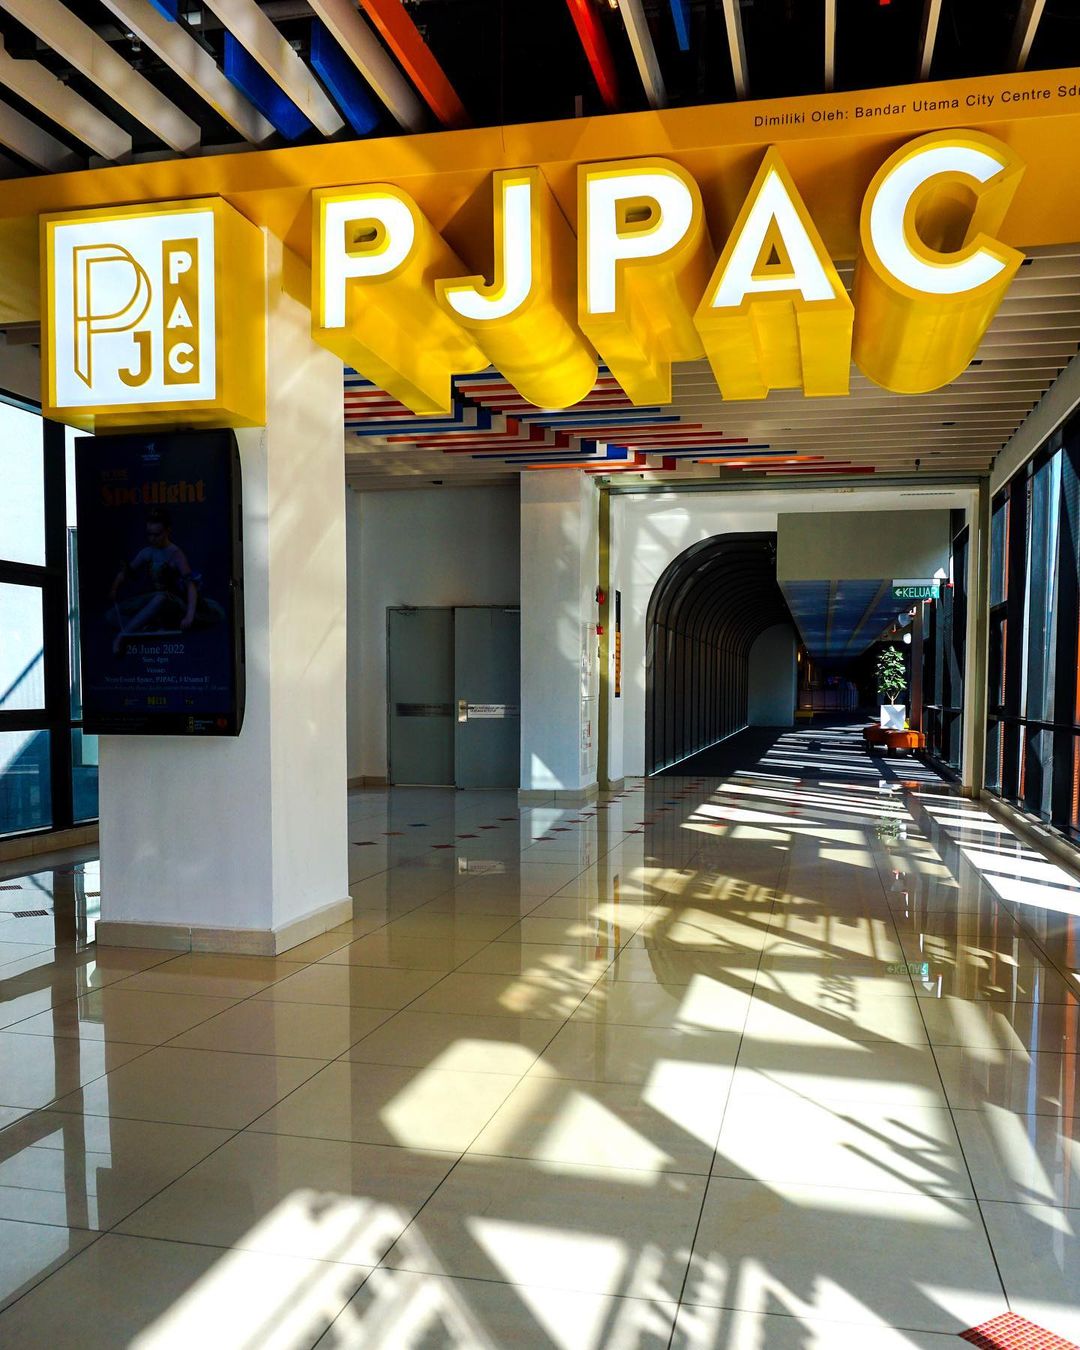 solo date ideas - pjpac entrance